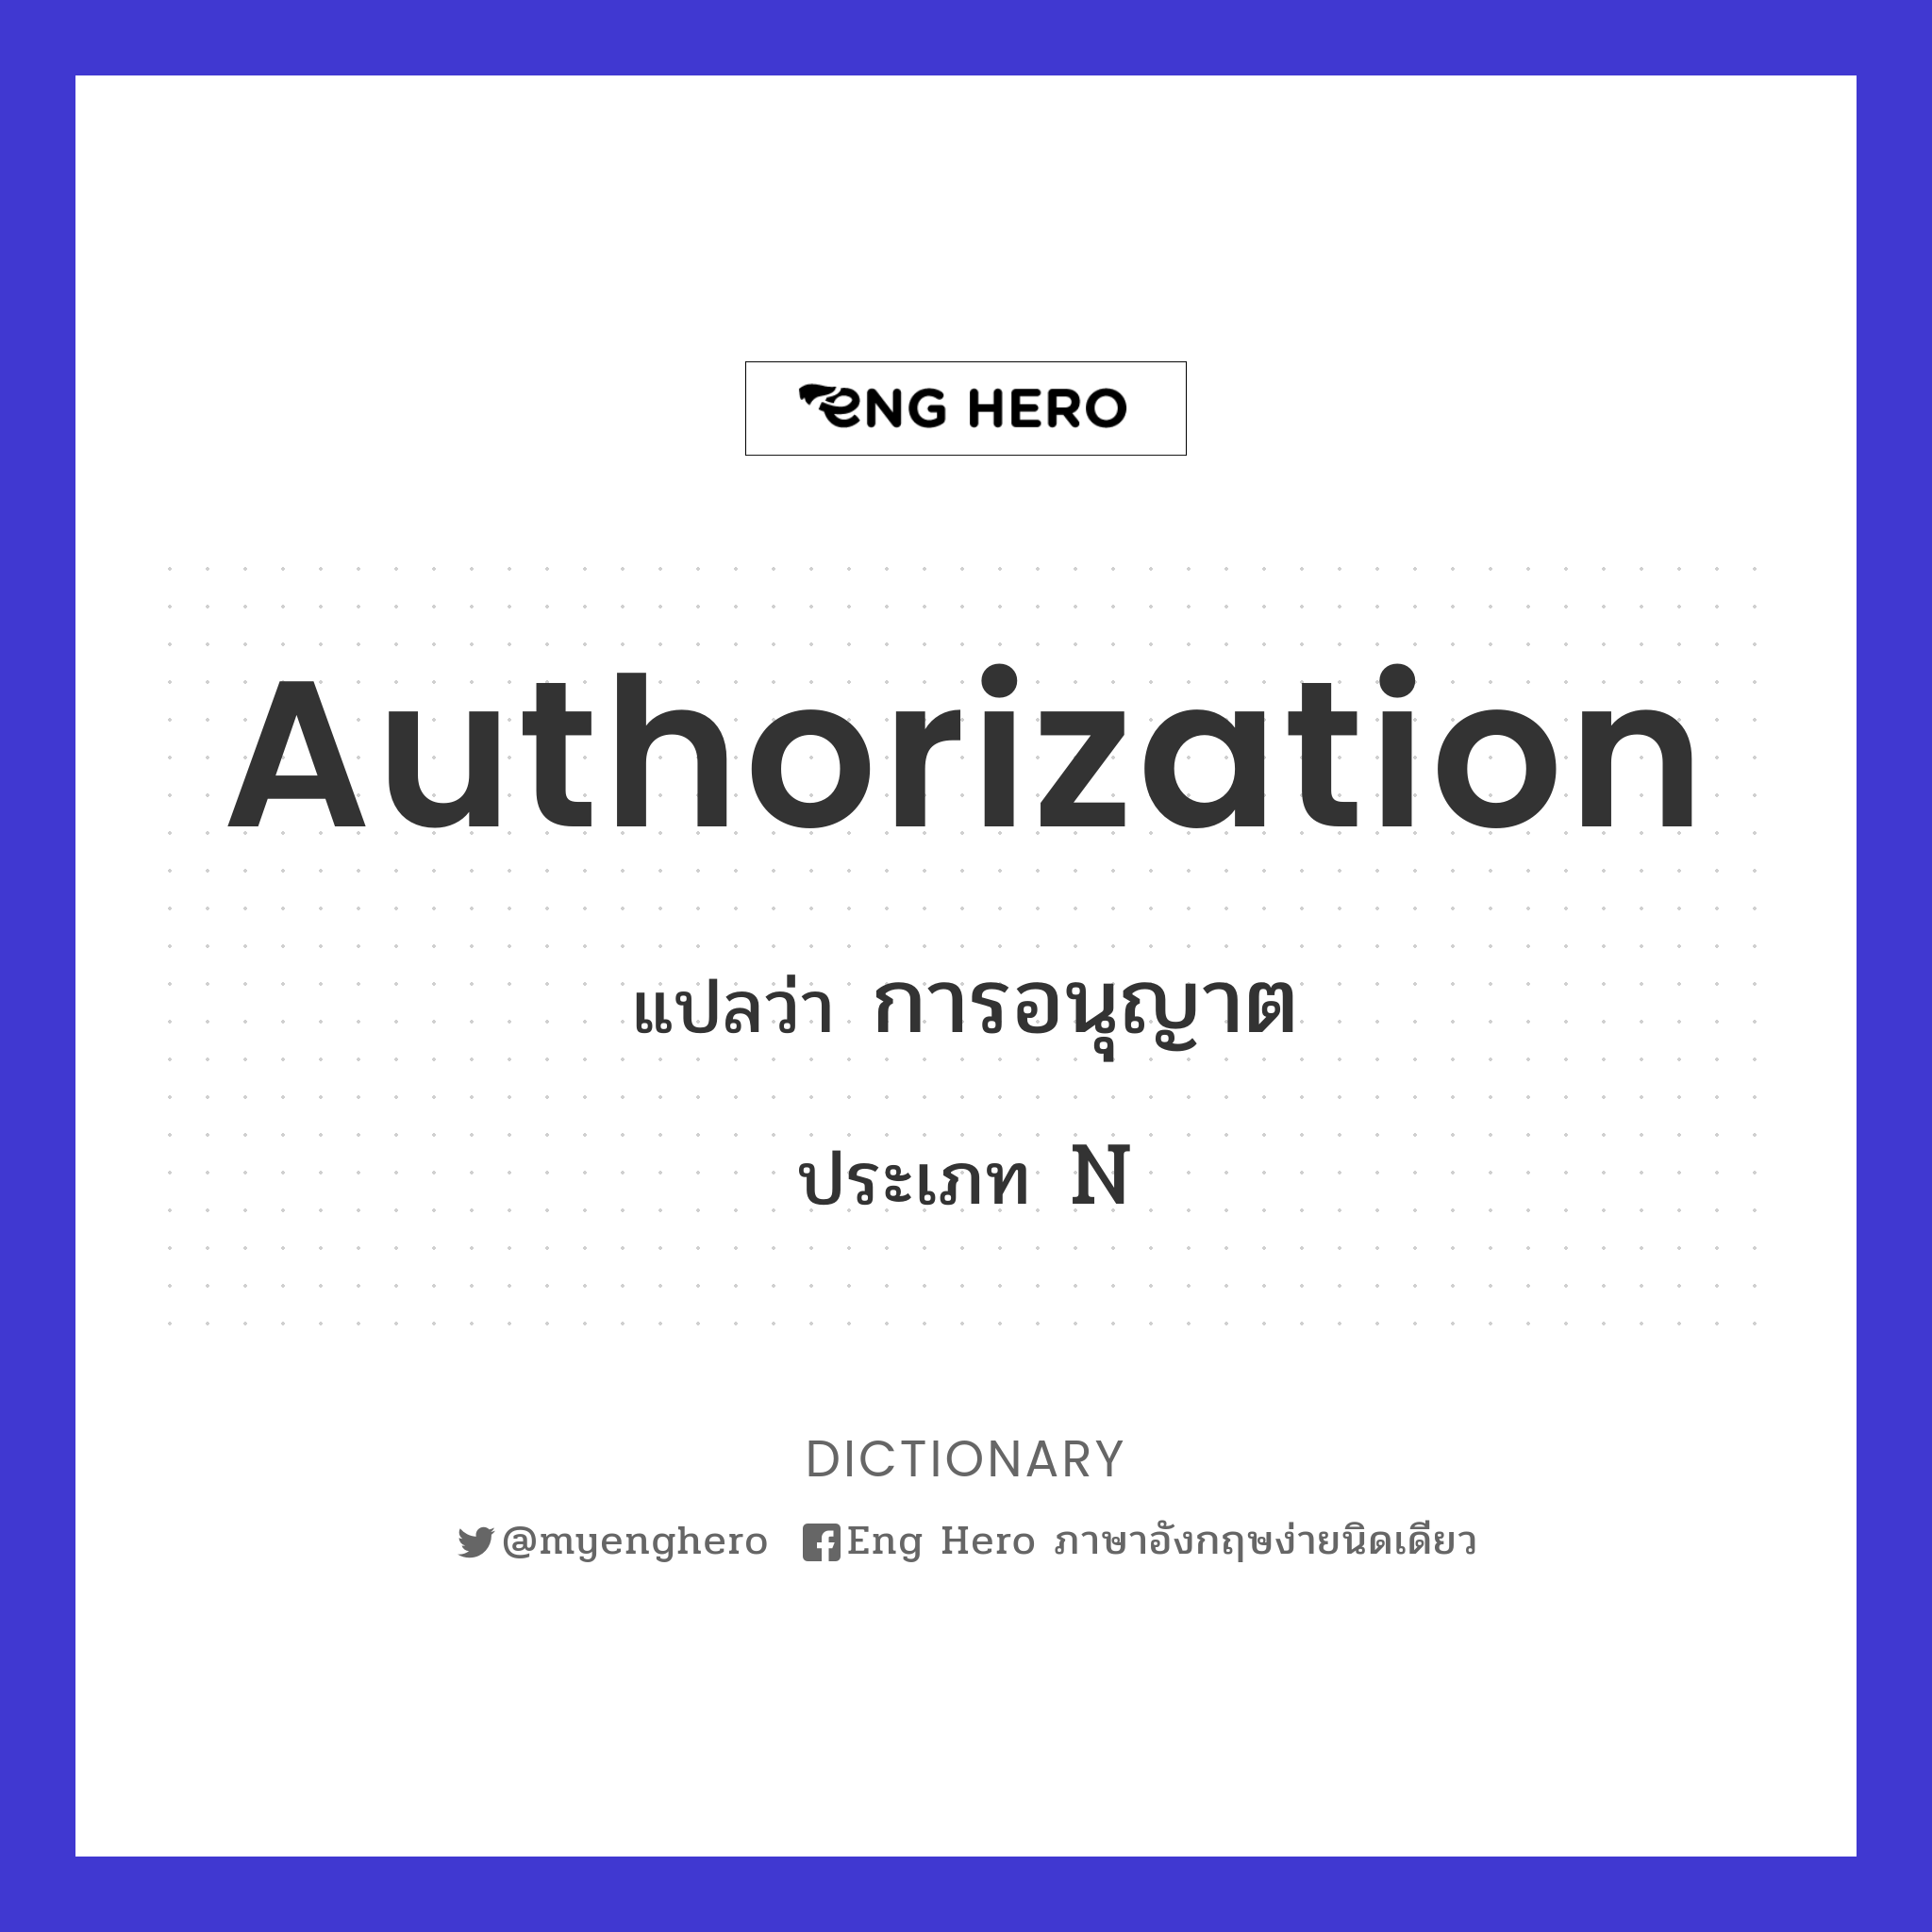 authorization